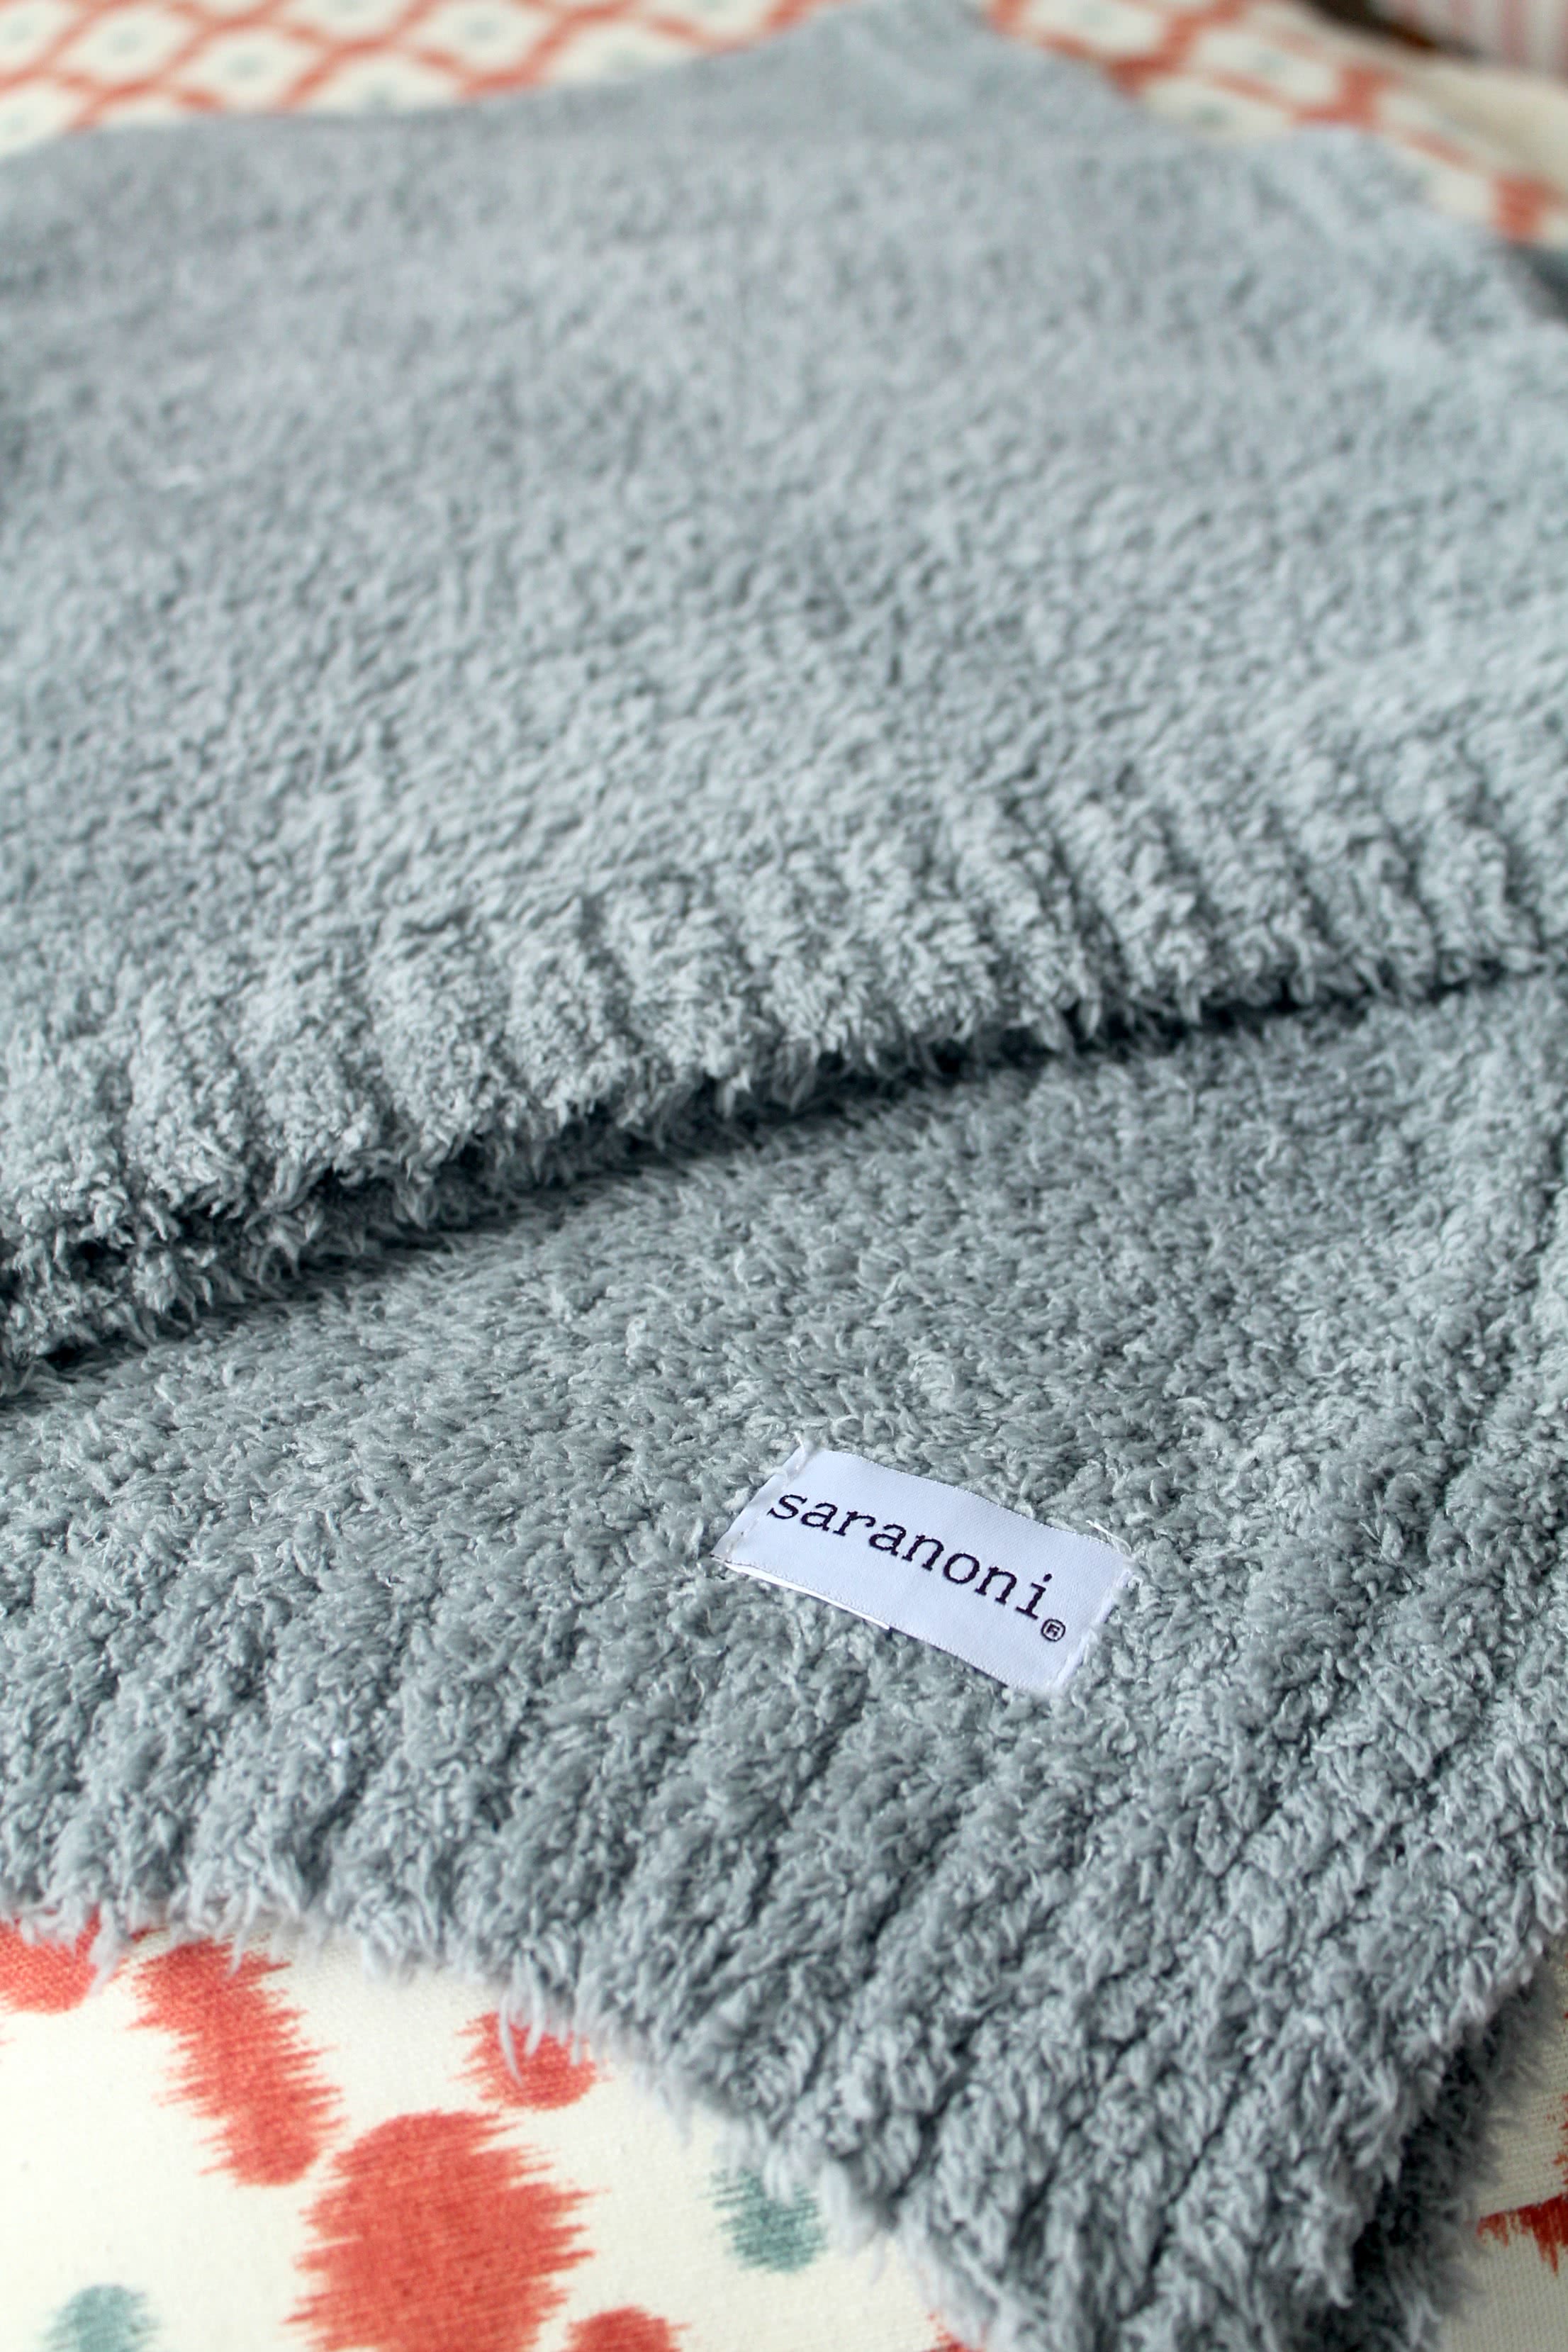 Saranoni Luxury Blankets Giveaway!